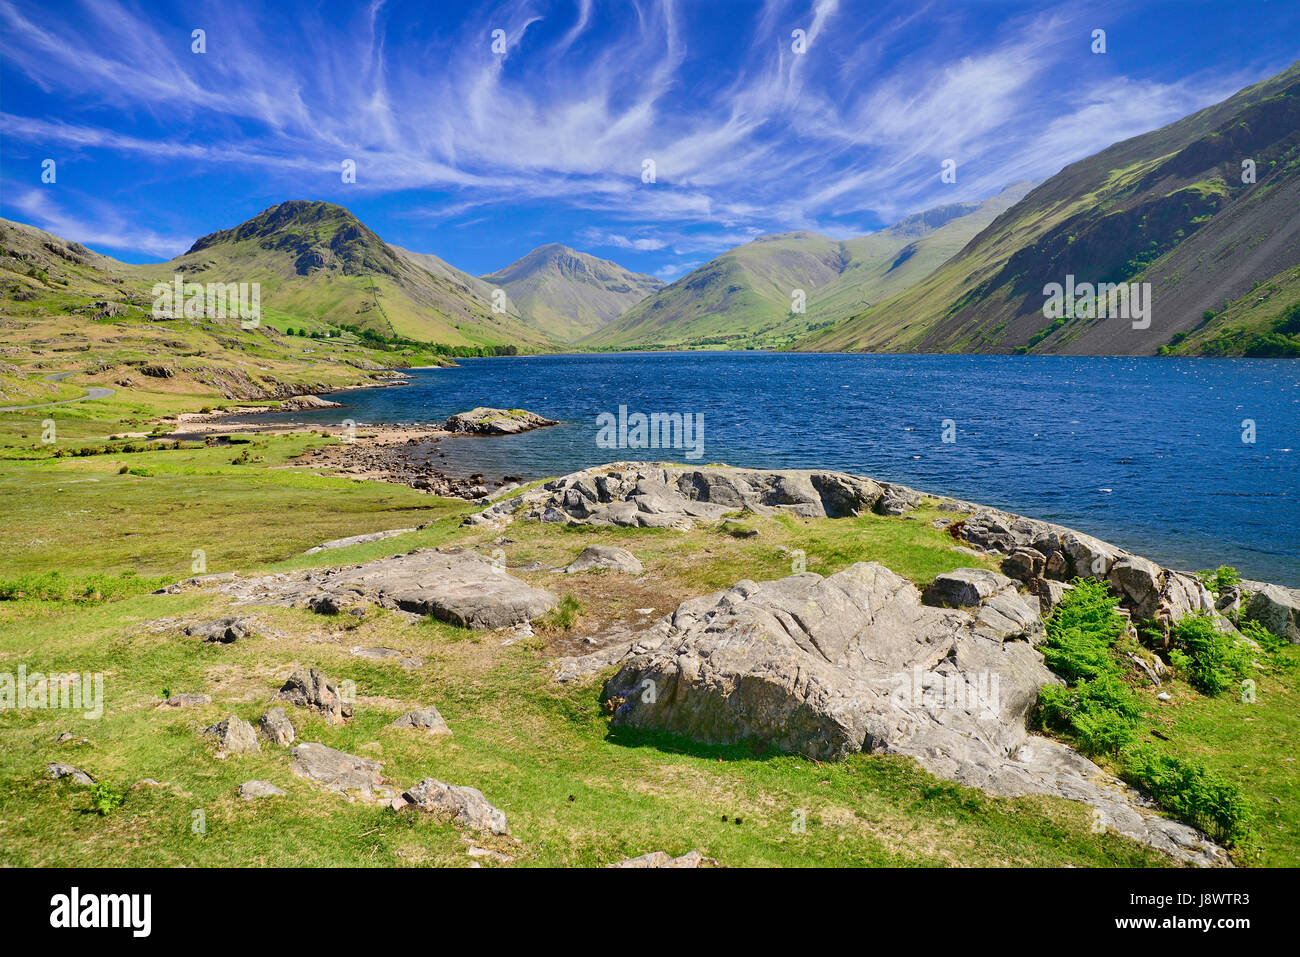 L'Angleterre, Cumbria, Lake District, Wastwater avec grand Gable et Scafell Pike montagnes en arrière-plan. Banque D'Images